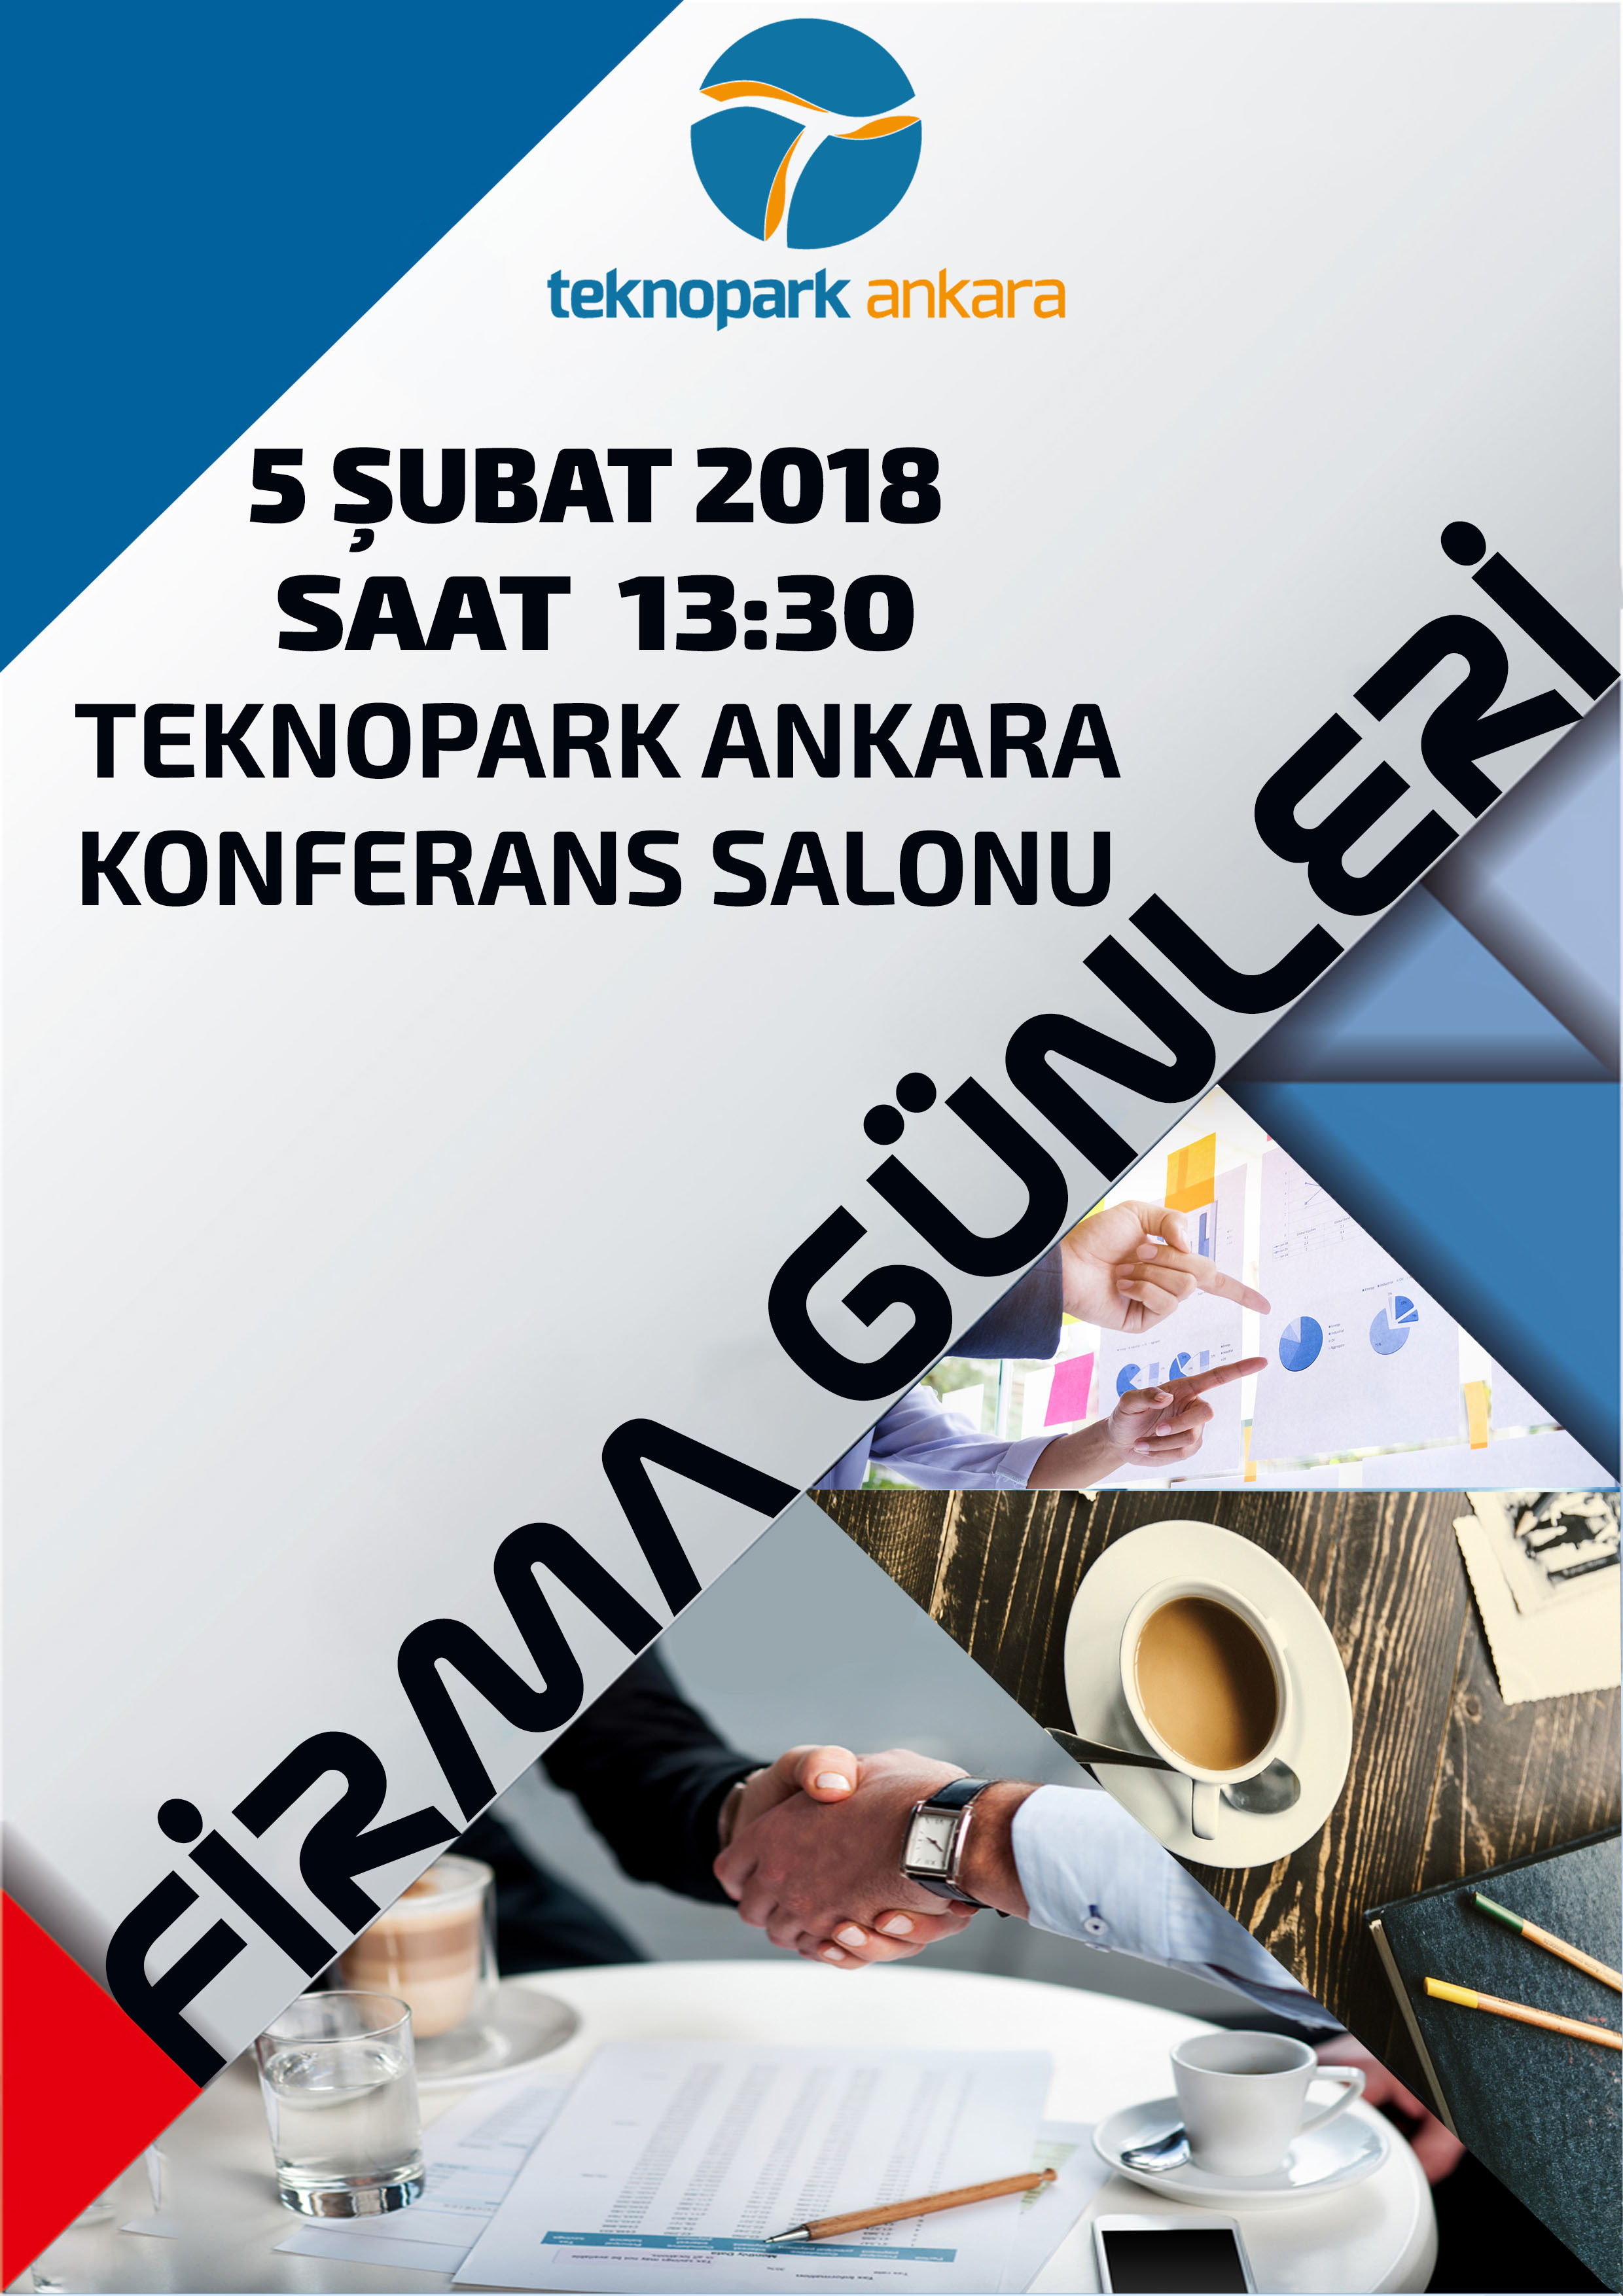 Teknopark Ankara olarak 5 Şubat 2018 günü tanışma etkinliği düzenlenecektir. Bu etkinliğimizde sizleri de aramızda görmekten mutluluk duyarız.